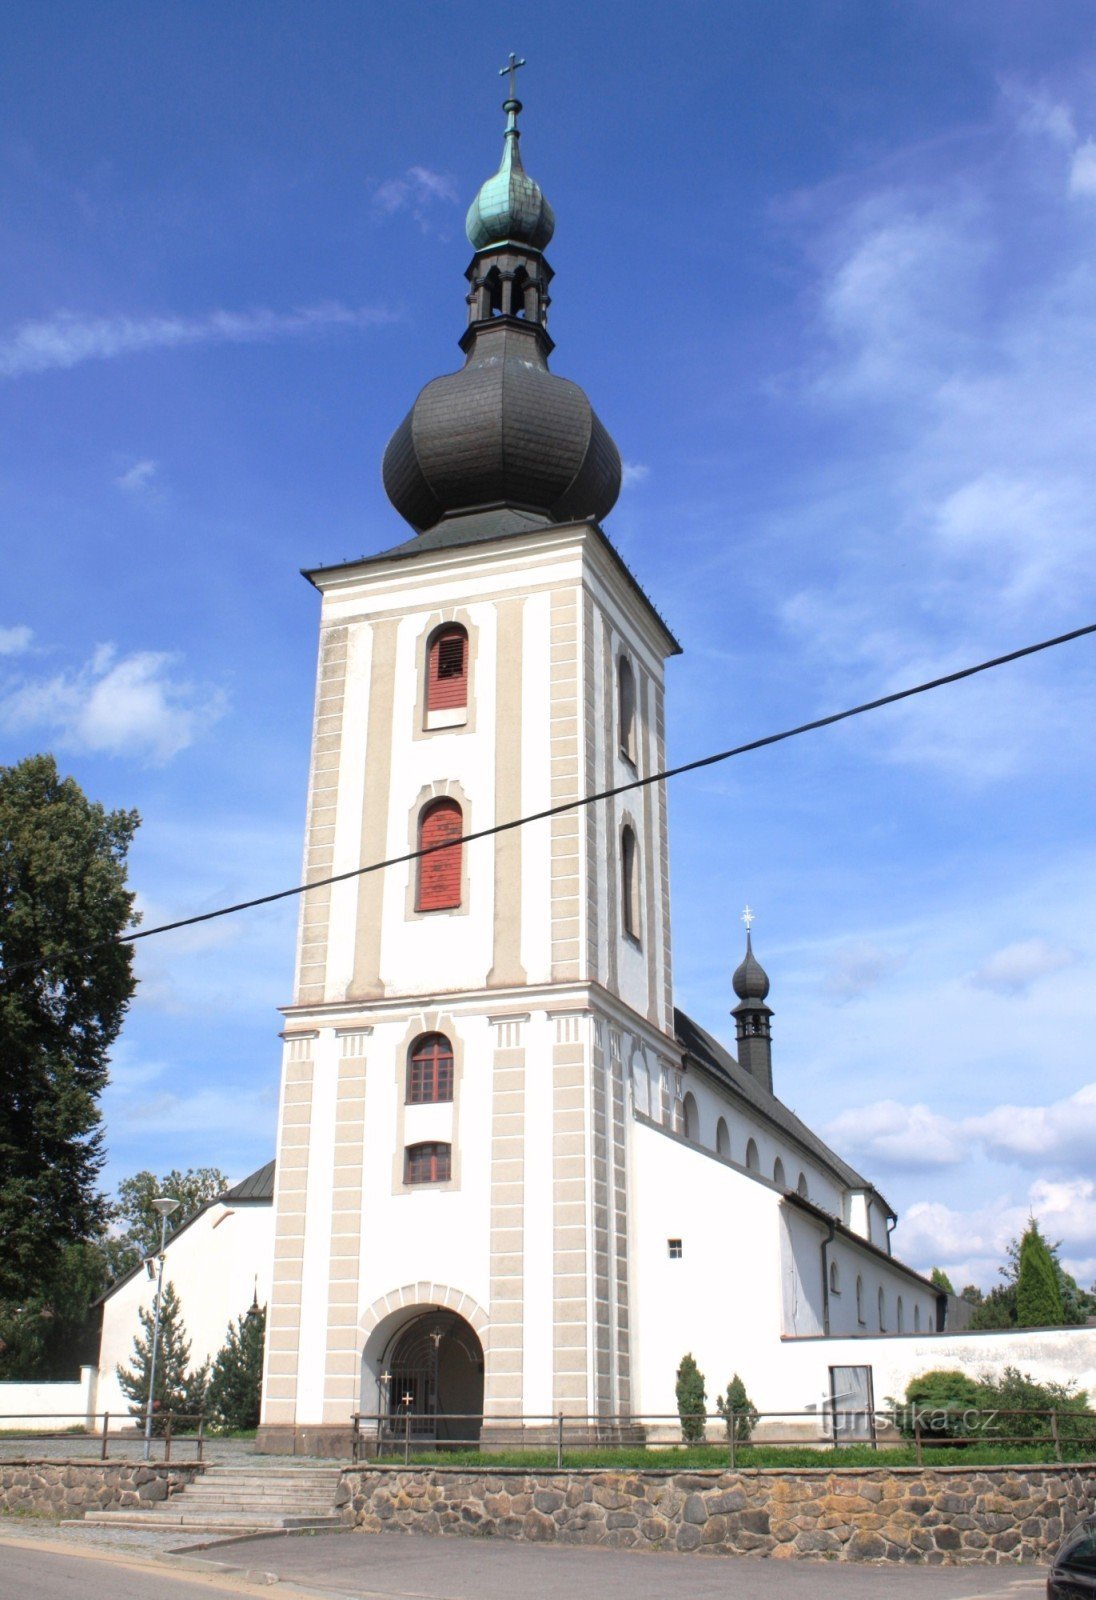 Мержин - церковь св. Иоанн Креститель